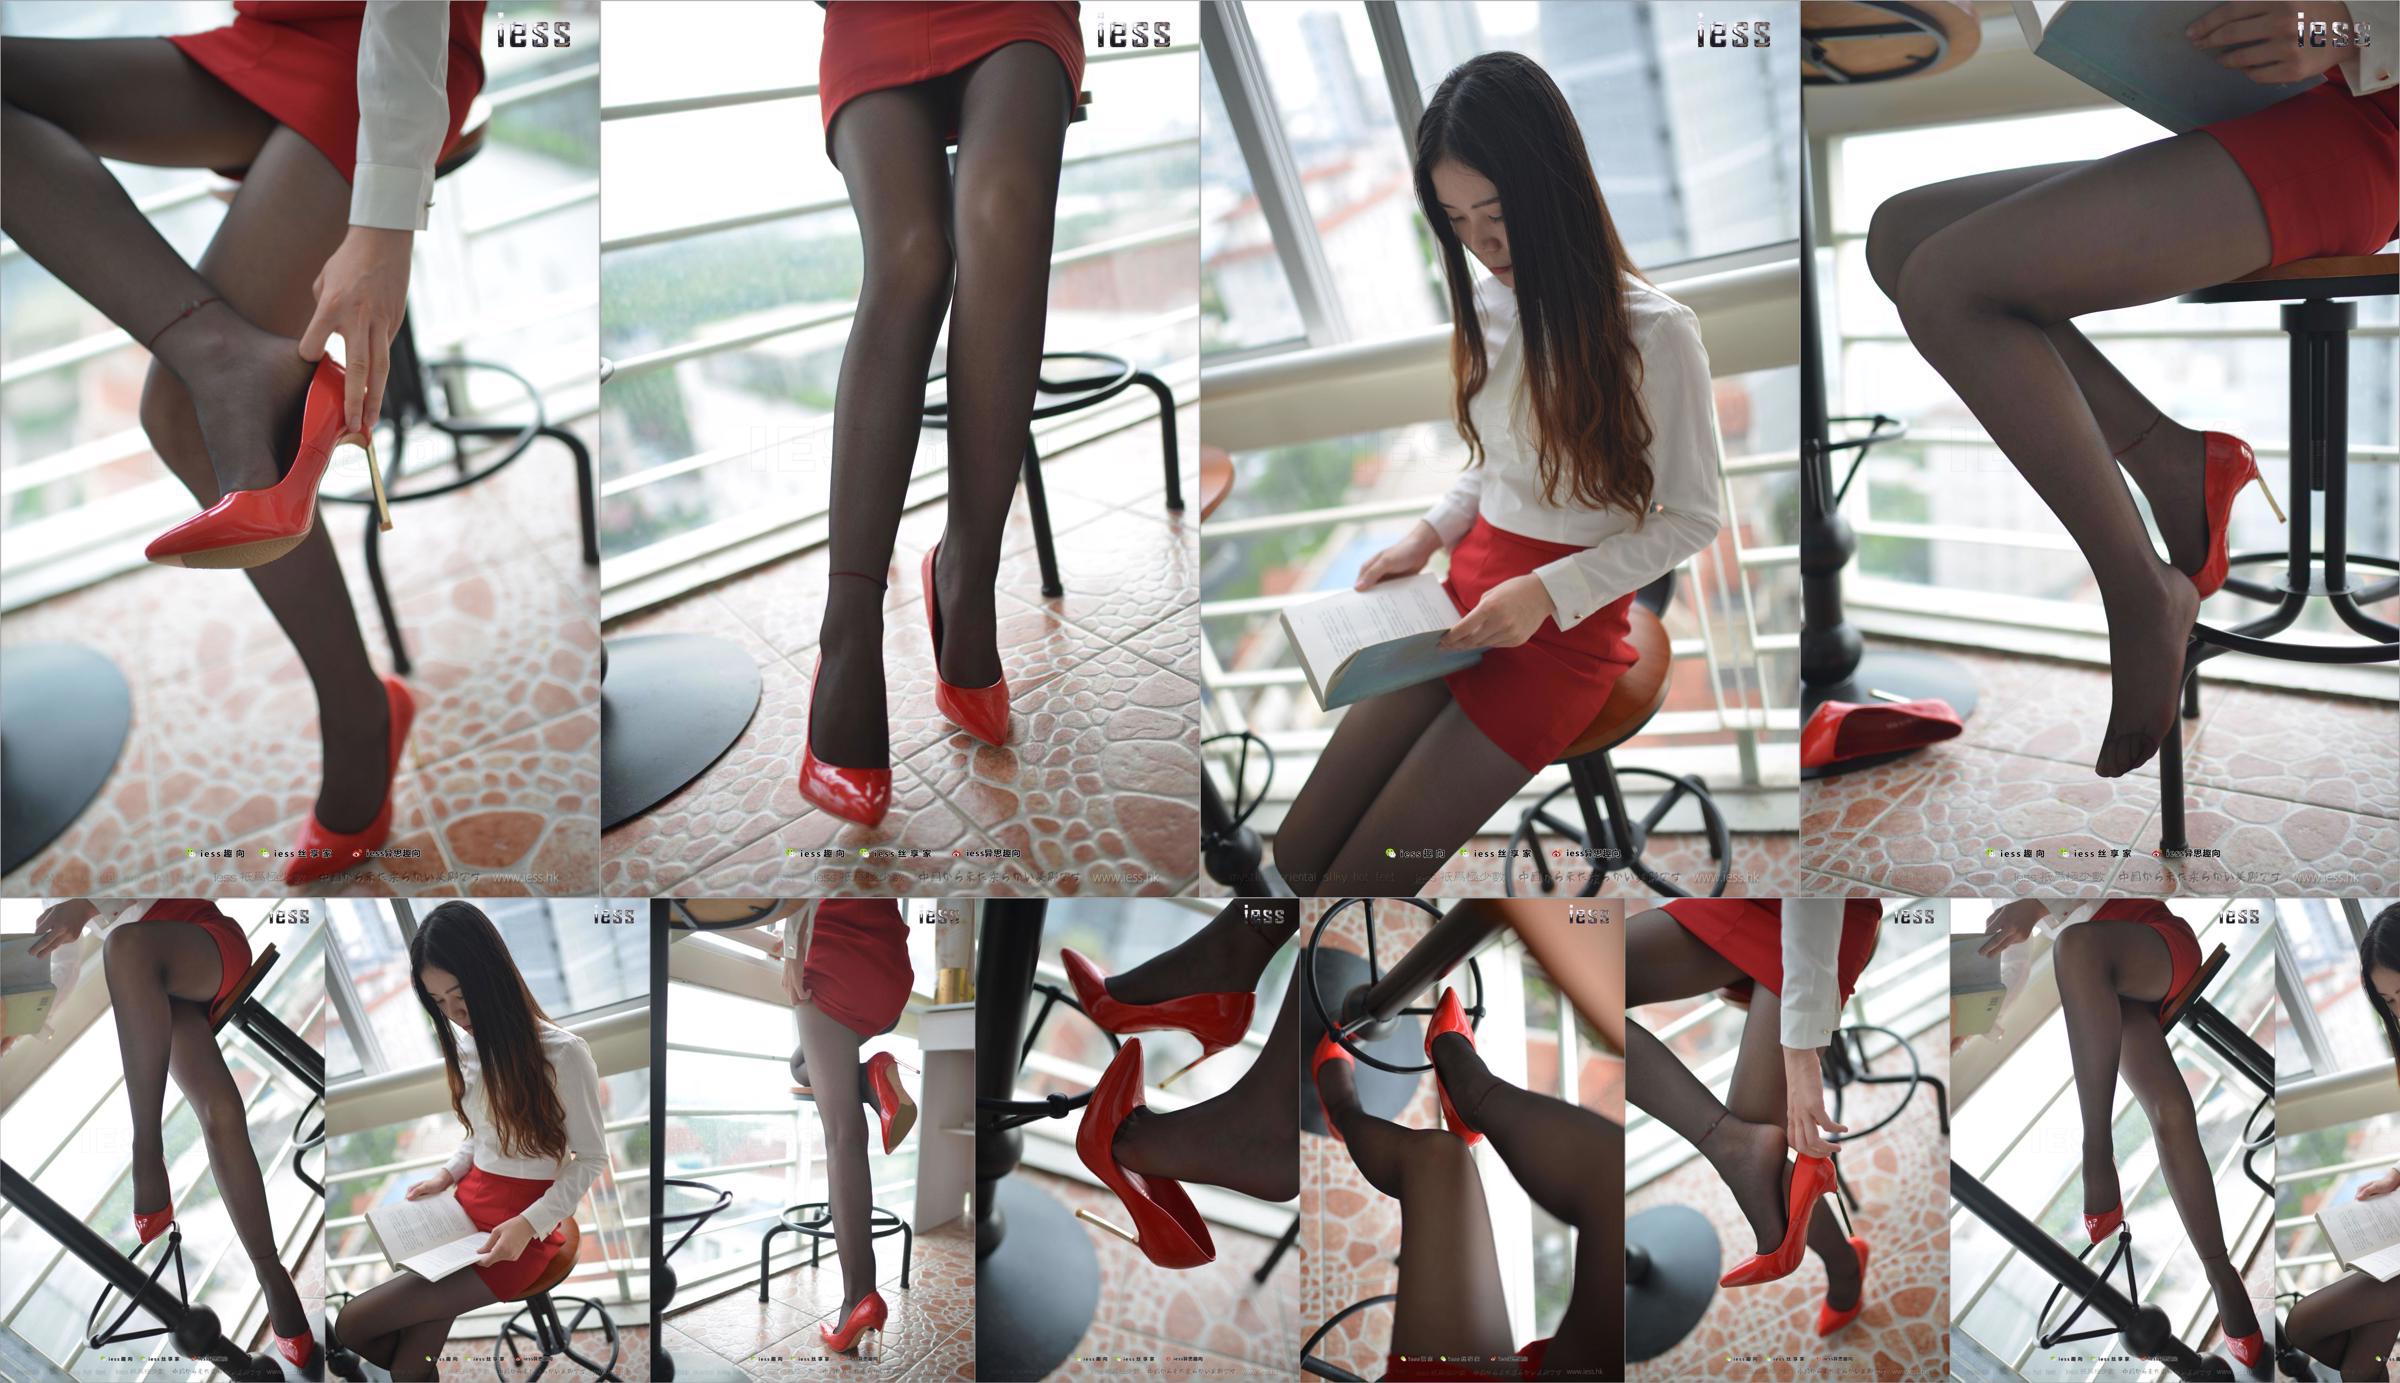 Silk Foot Bento 147 Concubine "Red High, Black Silk and Red Dress" [IESS Estranho Interessante] No.804758 Página 7